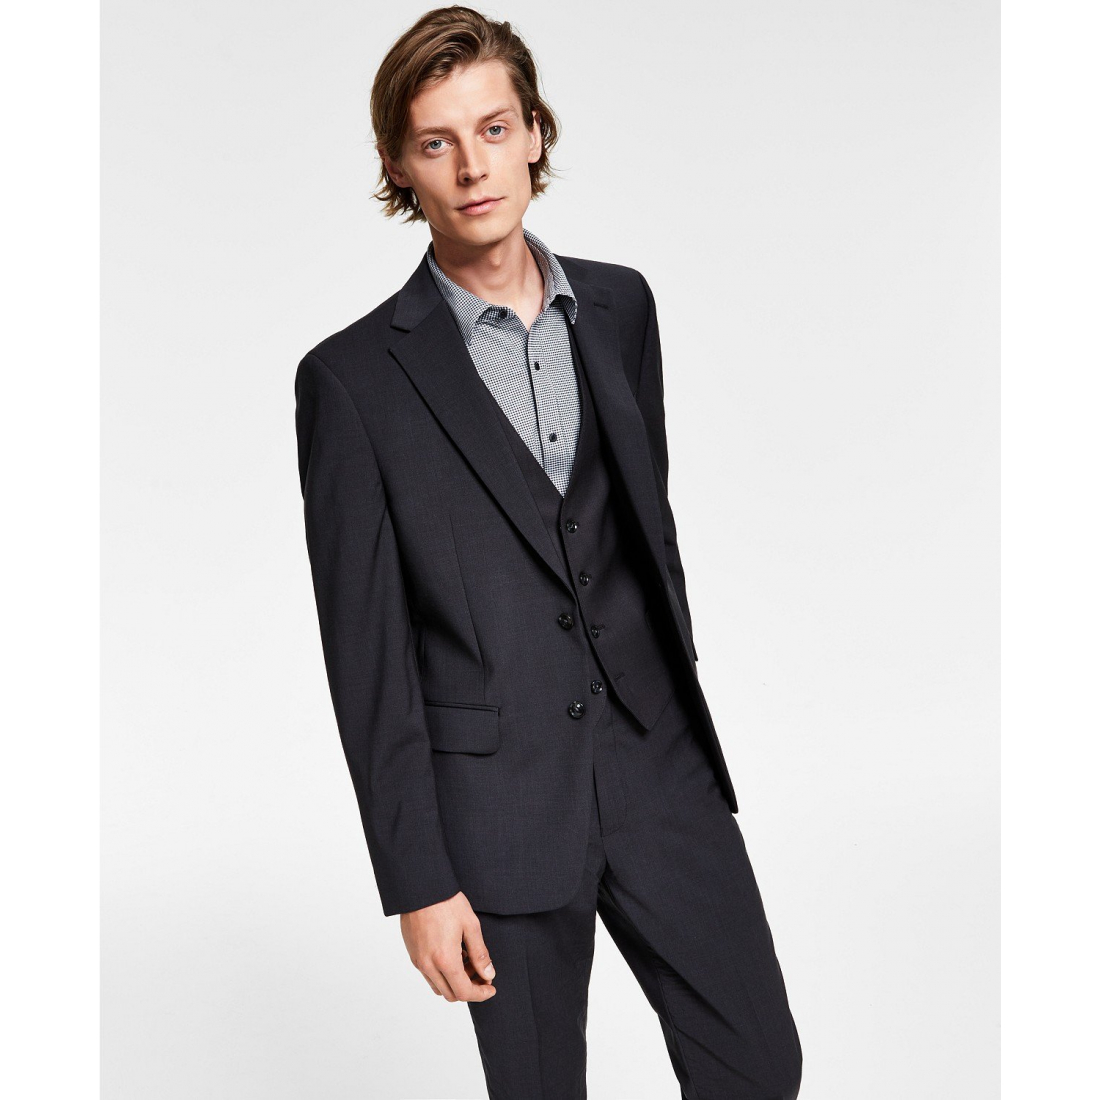 'Infinite Stretch Solid' Anzug Jacke für Herren